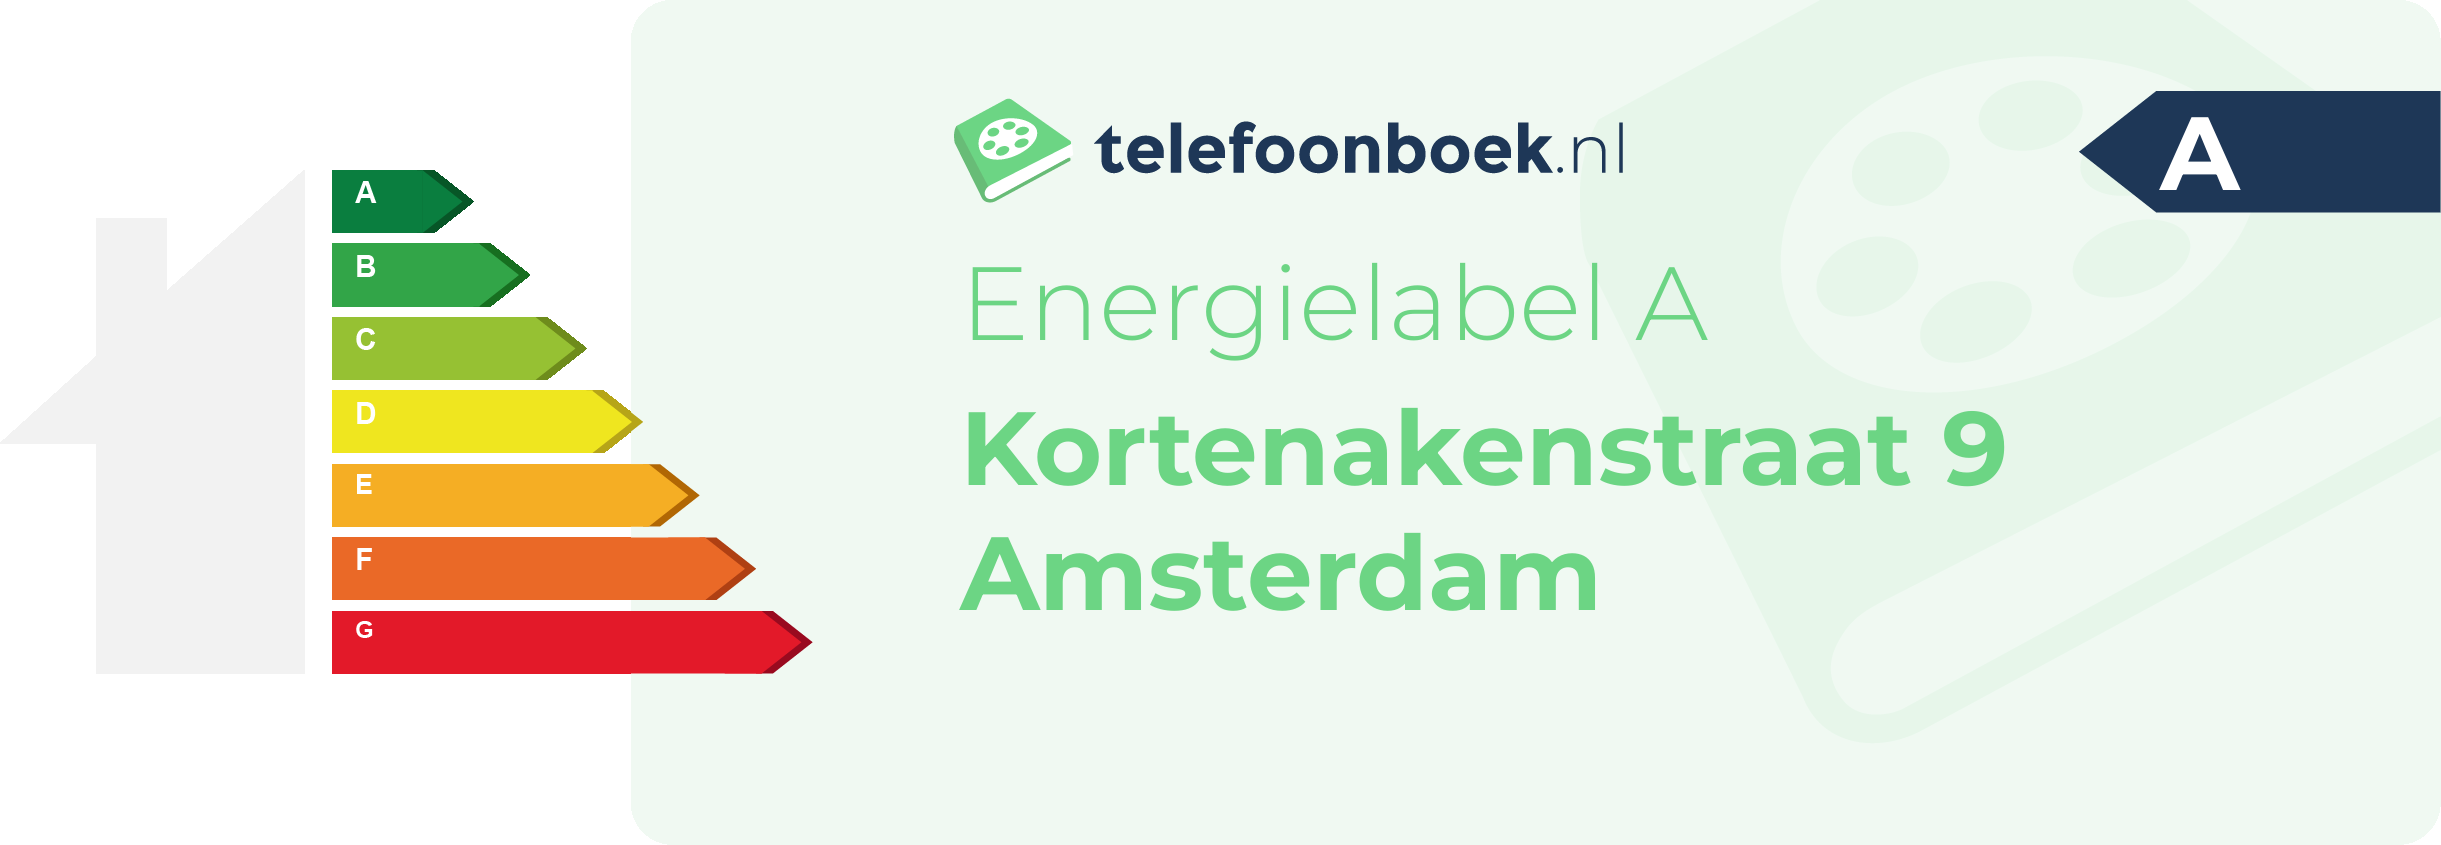 Energielabel Kortenakenstraat 9 Amsterdam